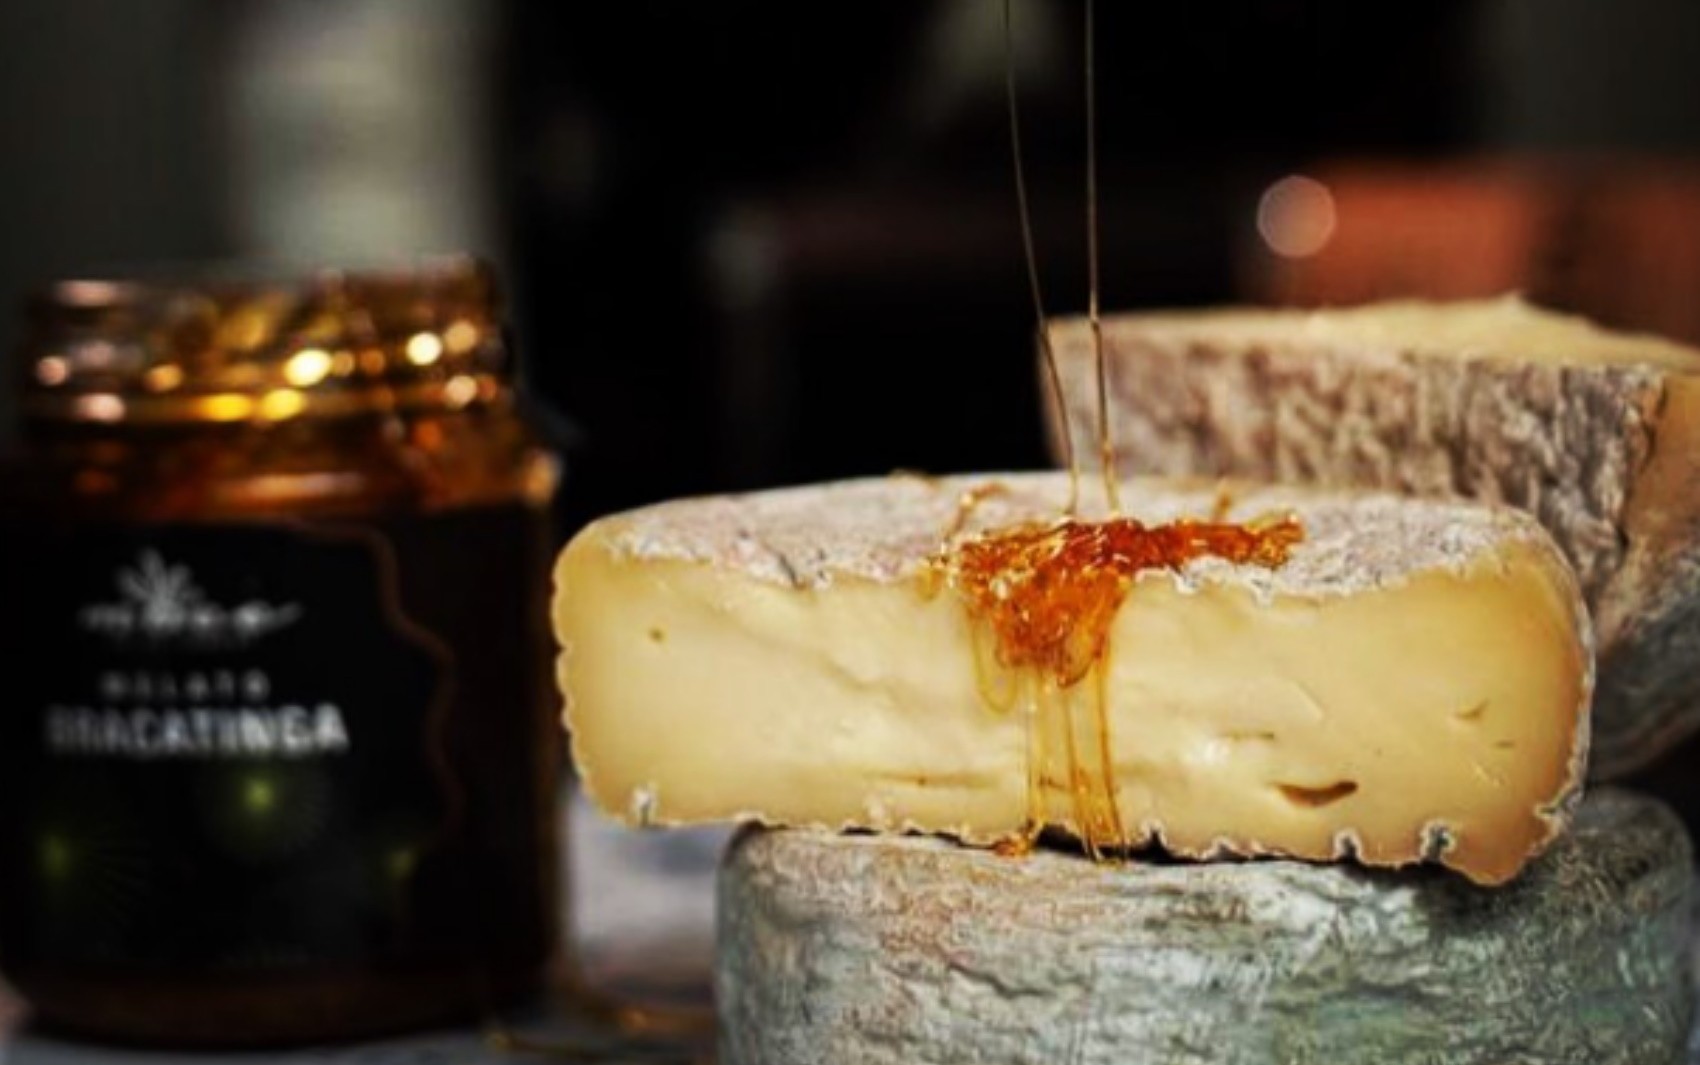 Técnicas francesas e maturação em câmara fria: Conheça queijo fabricado por família goiana premiado em campeonato mundial